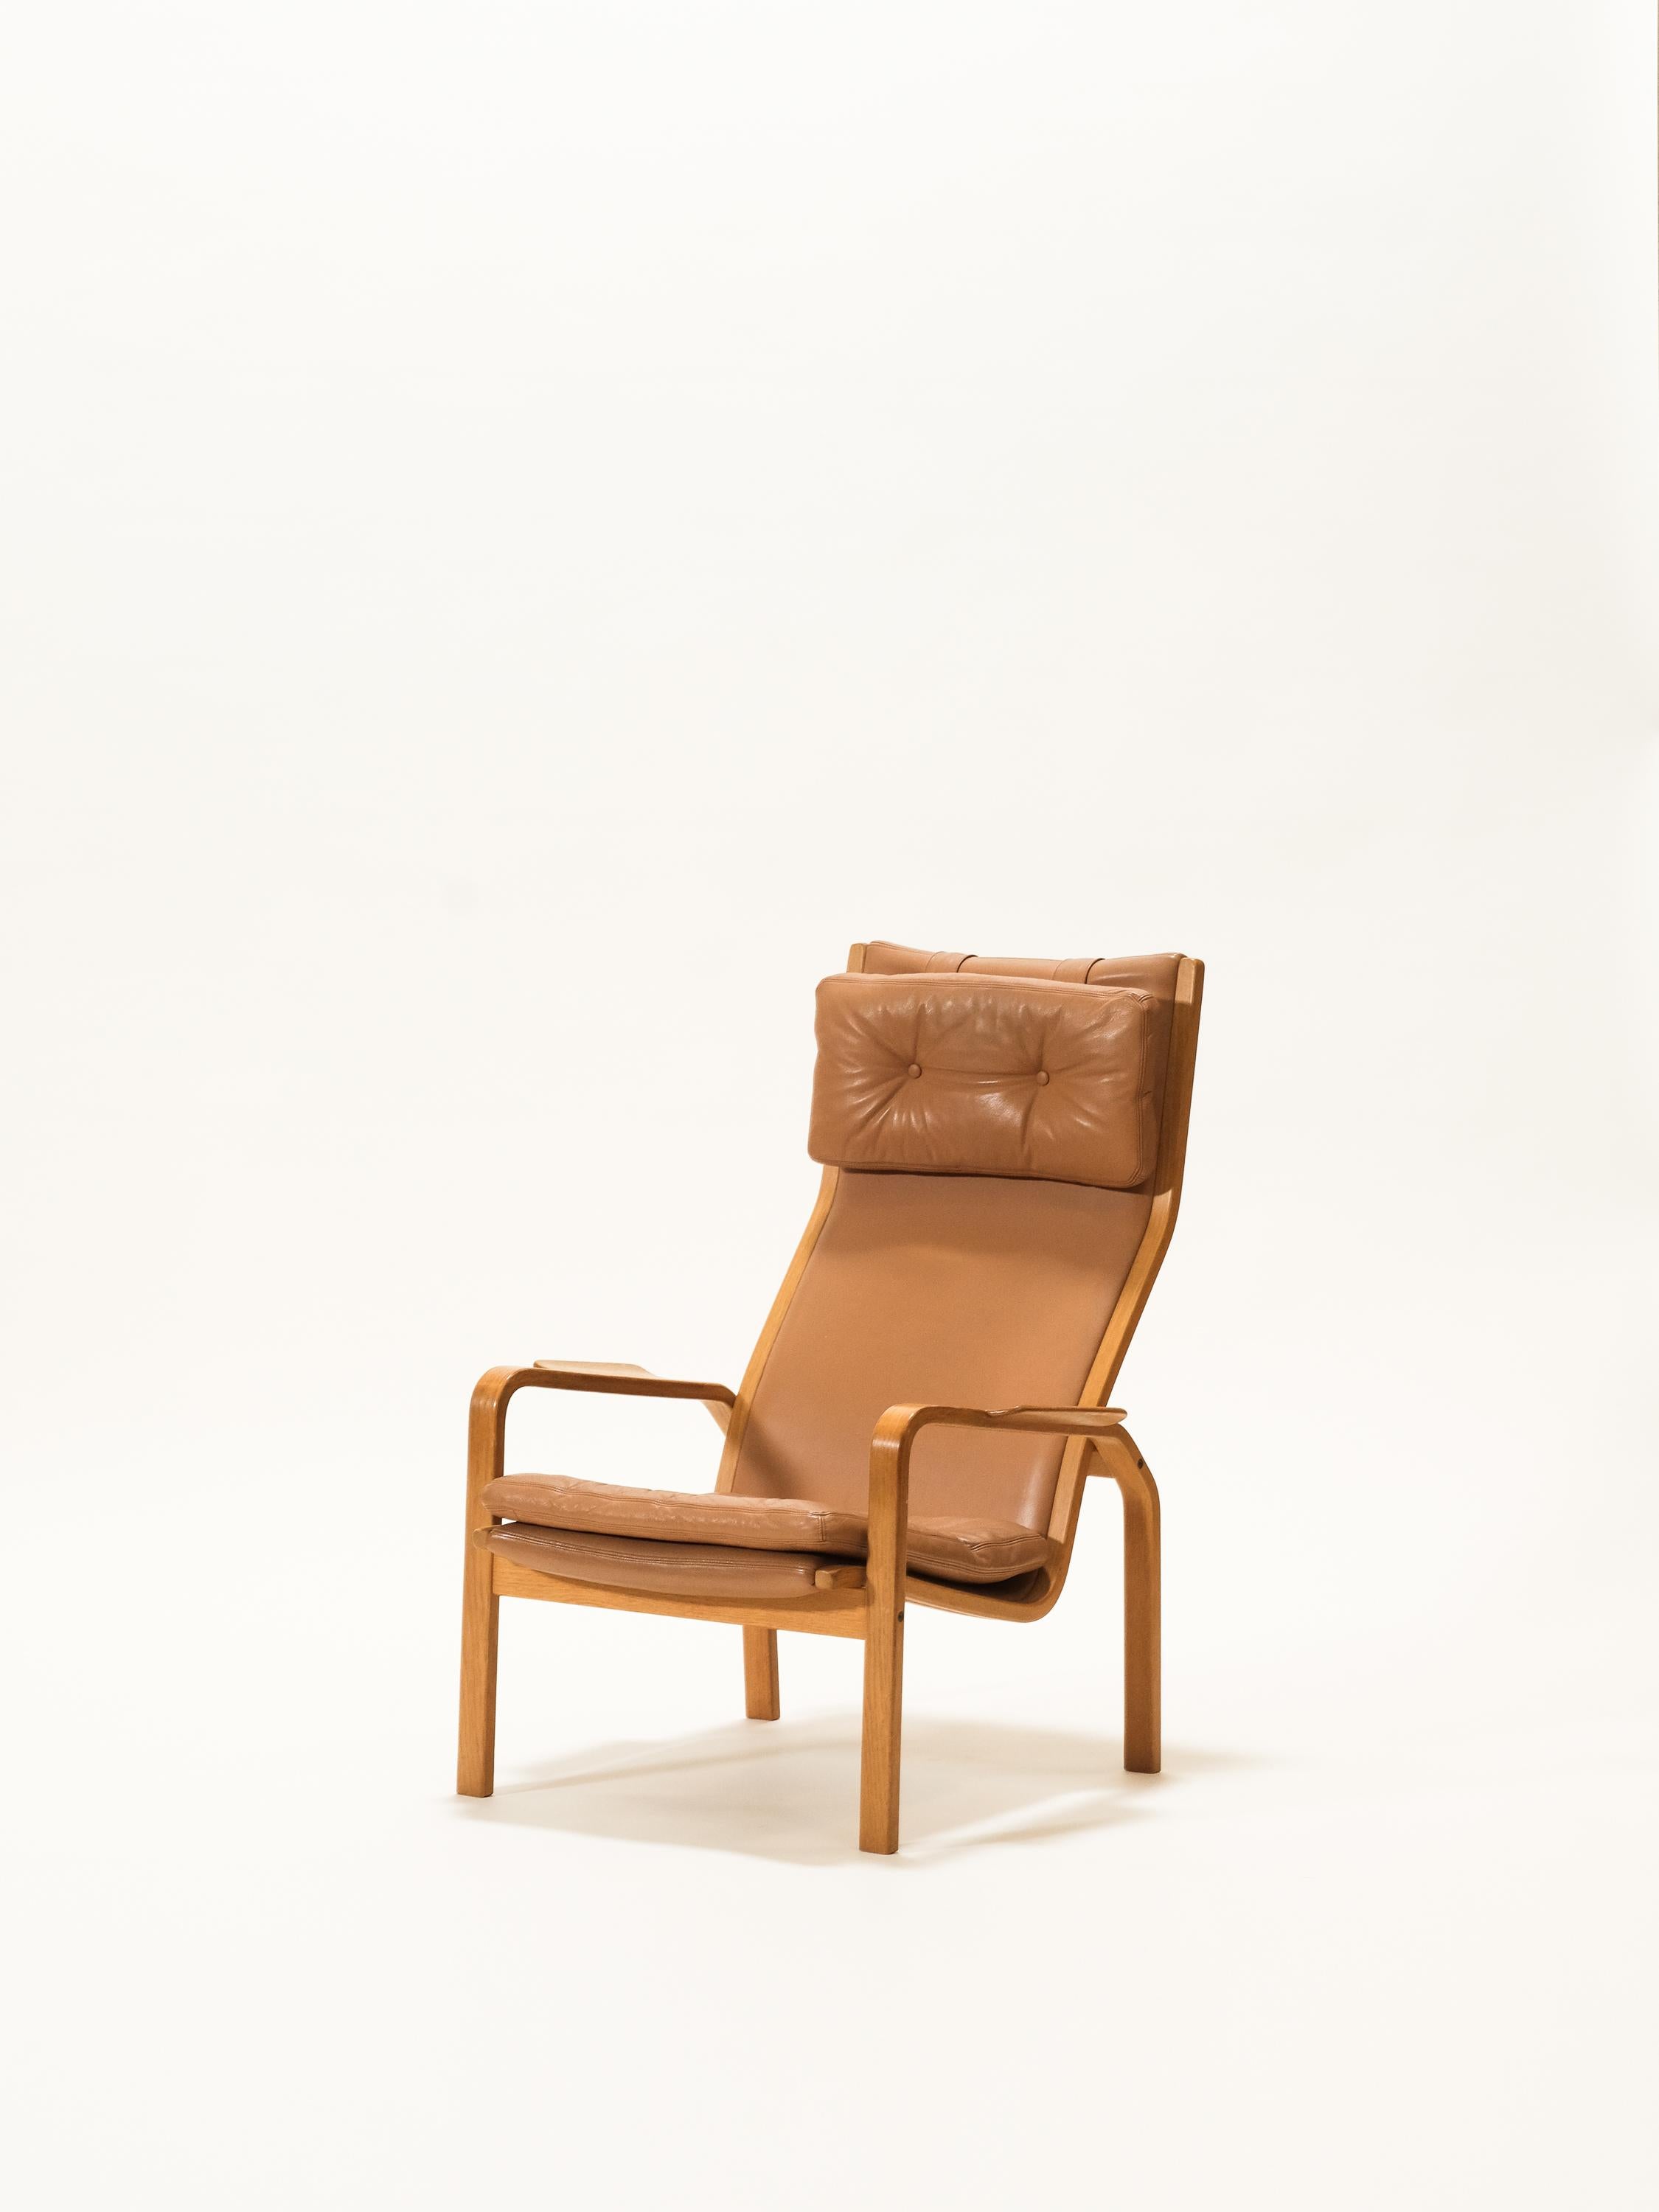 Loungesessel, entworfen von Yngve Ekström und hergestellt von Swedese in den 1960er Jahren. Struktur in Eichenholz und Cognaq Leder uphostery. Der Stuhl ist vom Hersteller gekennzeichnet.

Guter Vintage-Zustand mit schöner Lederpatina.